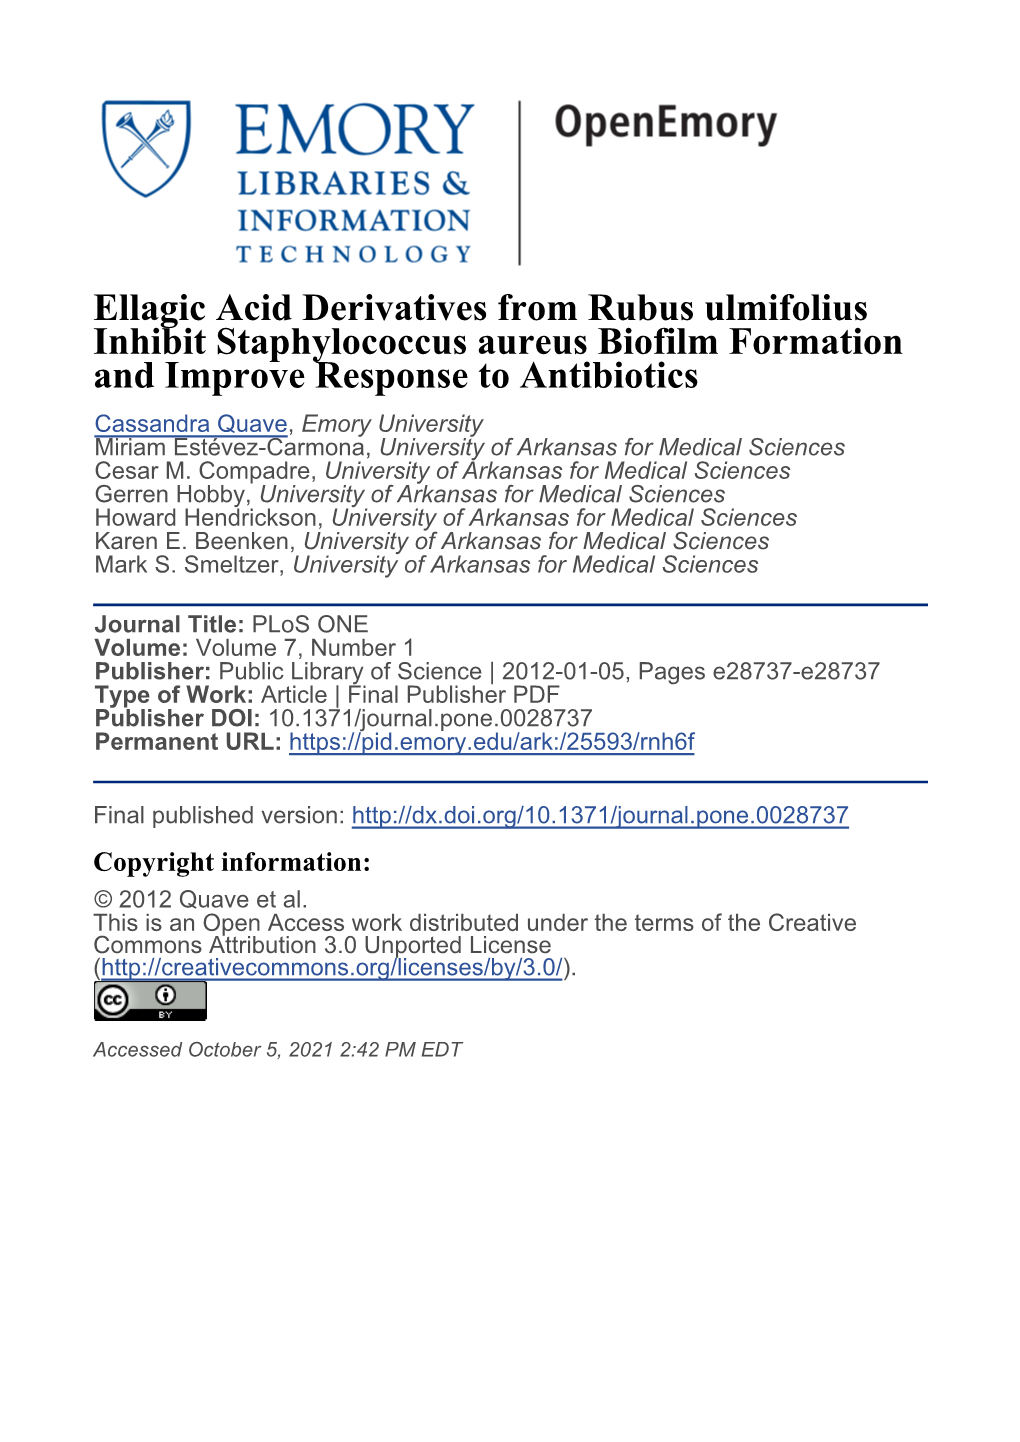 Ellagic Acid Derivatives from Rubus Ulmifolius Inhibit